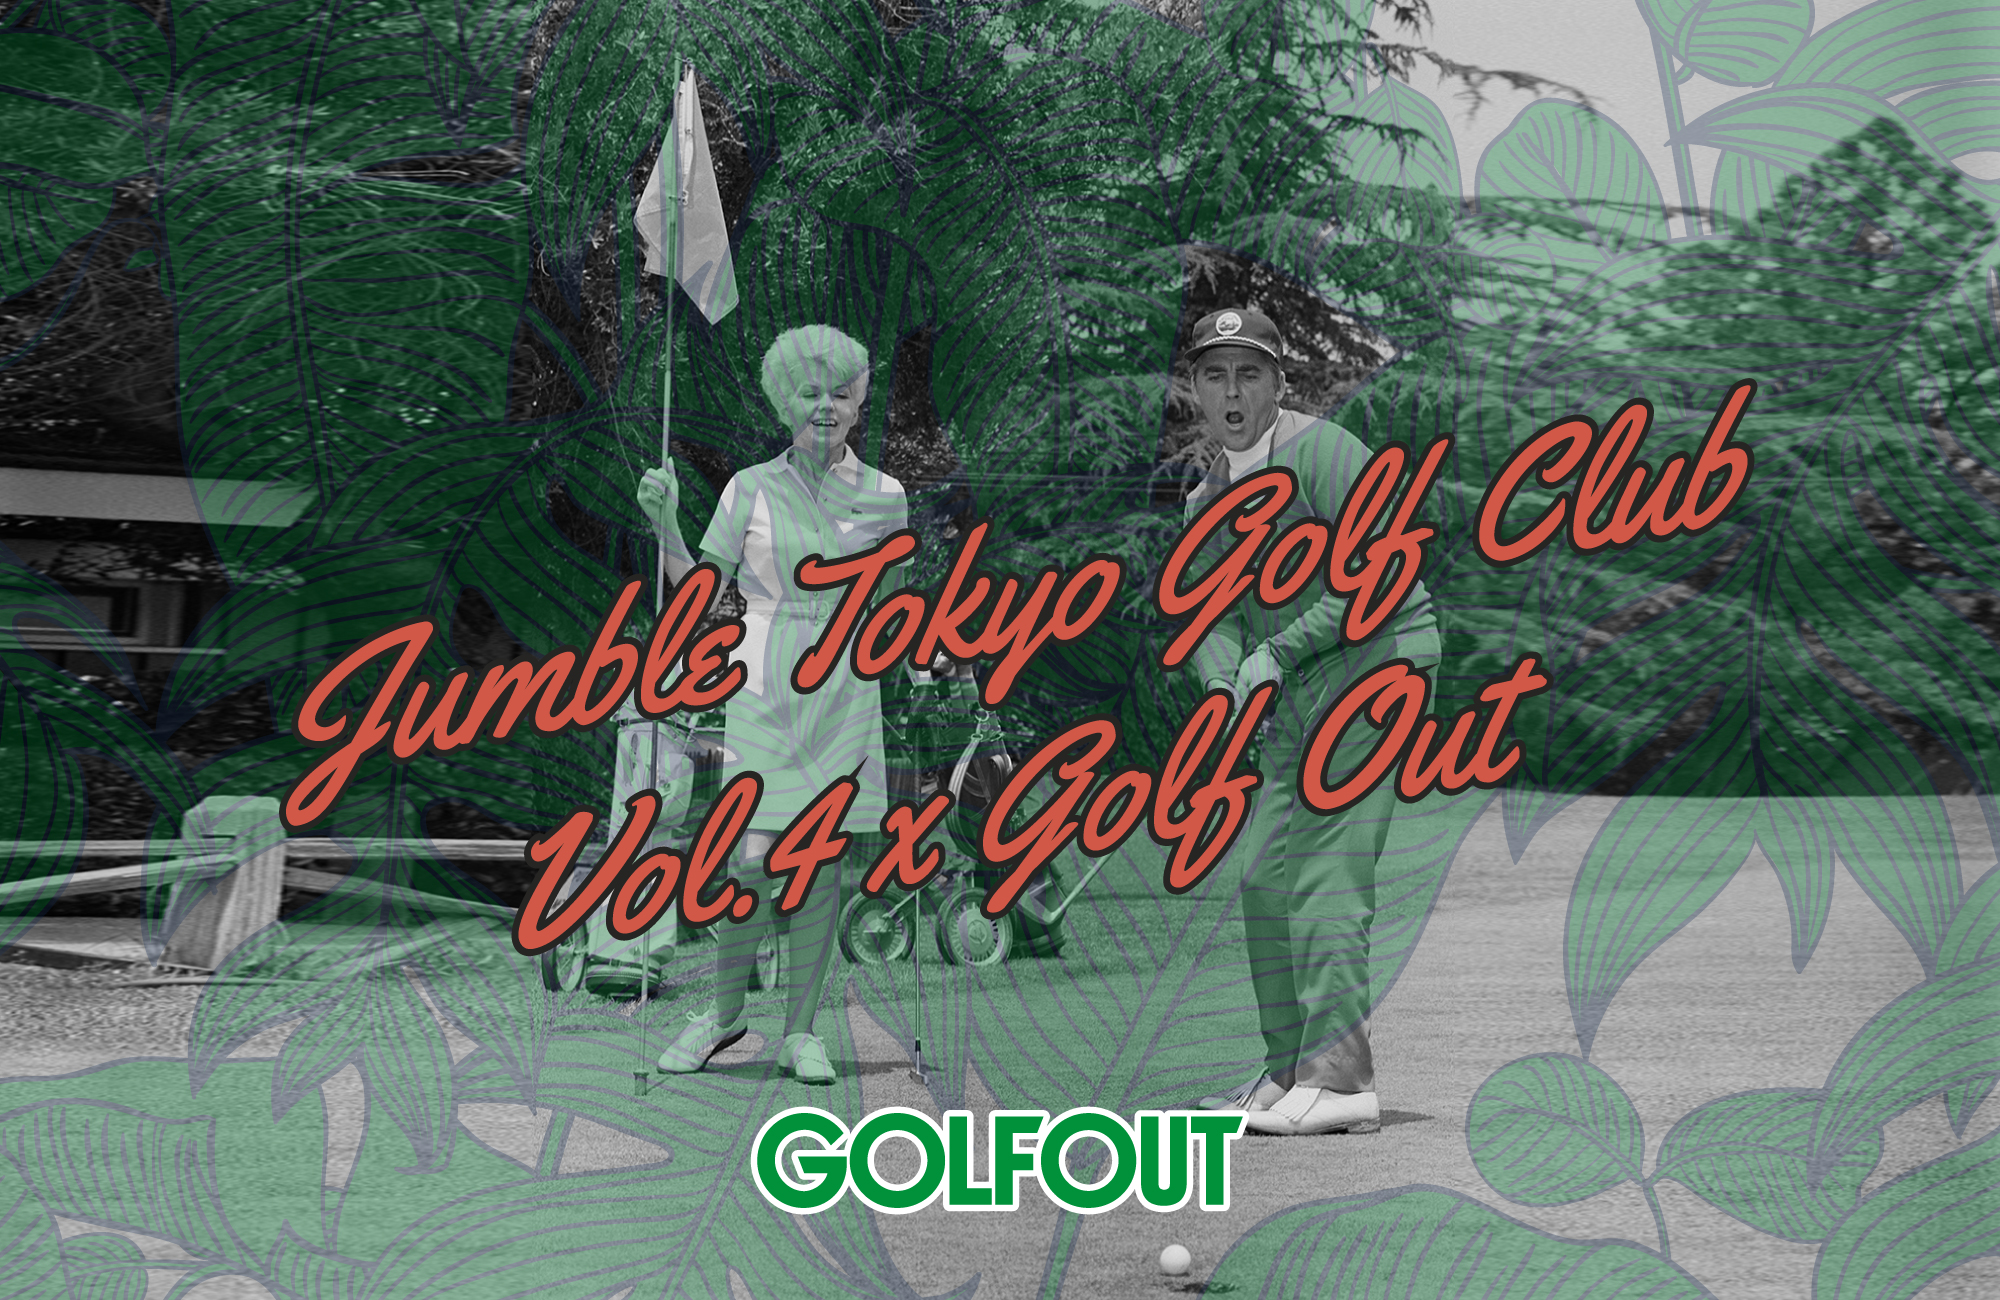 既存のHow toゴルフ雑誌とは異なり、おしゃれなゴルファーの日常を紹介する、ゴルフが好きな人の為のライフスタイルファッション雑誌『GOLF OUT』。今期も秋の雑誌の発売に先駆けて紙面に登場する話題のブランドがJumble Tokyoでご覧いただけます。